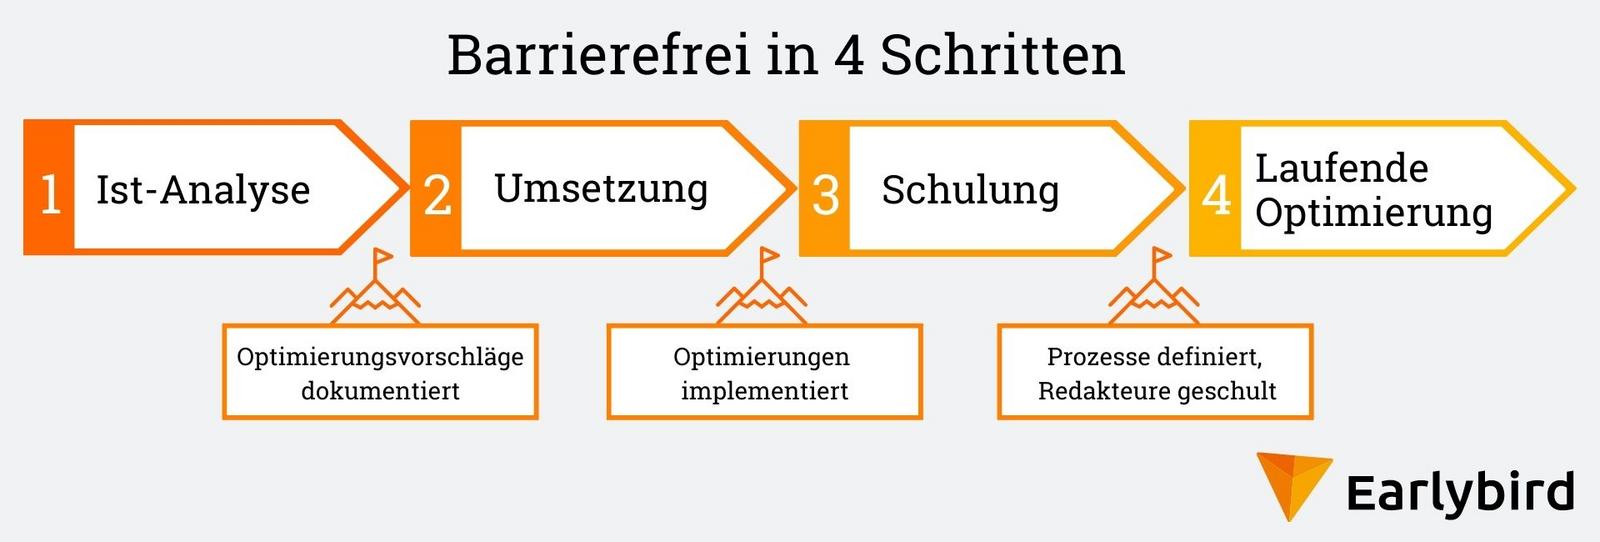 Ablaufgrafik über erste Schritte eines Barrierefreiheit-Projektes: 1. Ist-Analyse, 2. Umsetzung, 3. Schulung der Redakteure, 4. Laufende Optimierung.